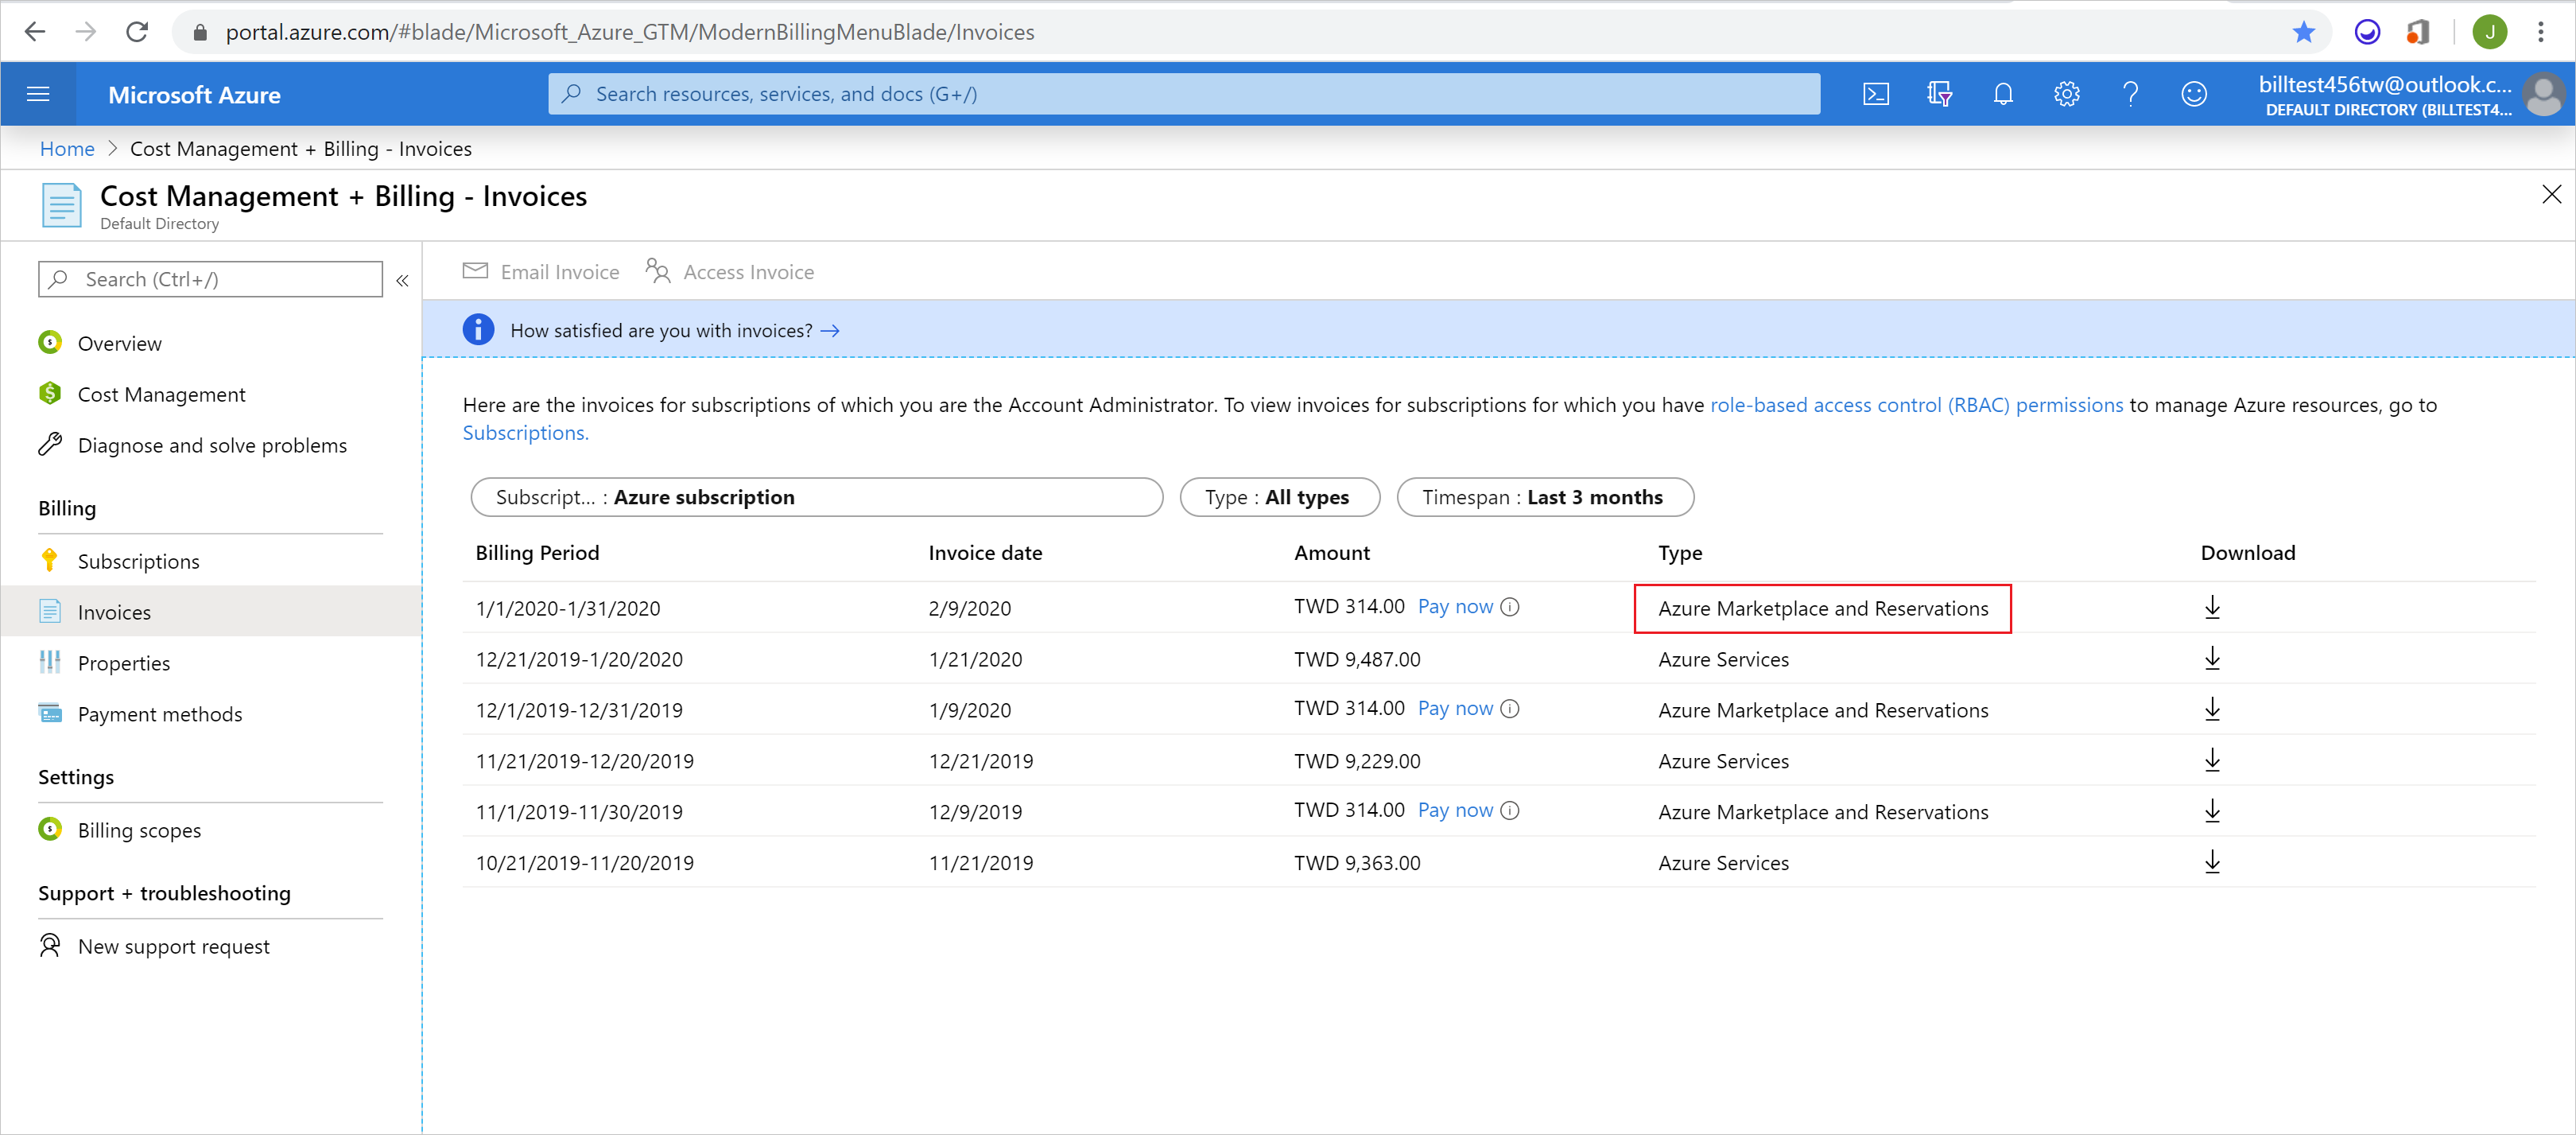 Captura de pantalla que muestra las facturas de facturación con Azure Marketplace y Reservations hightlighted..